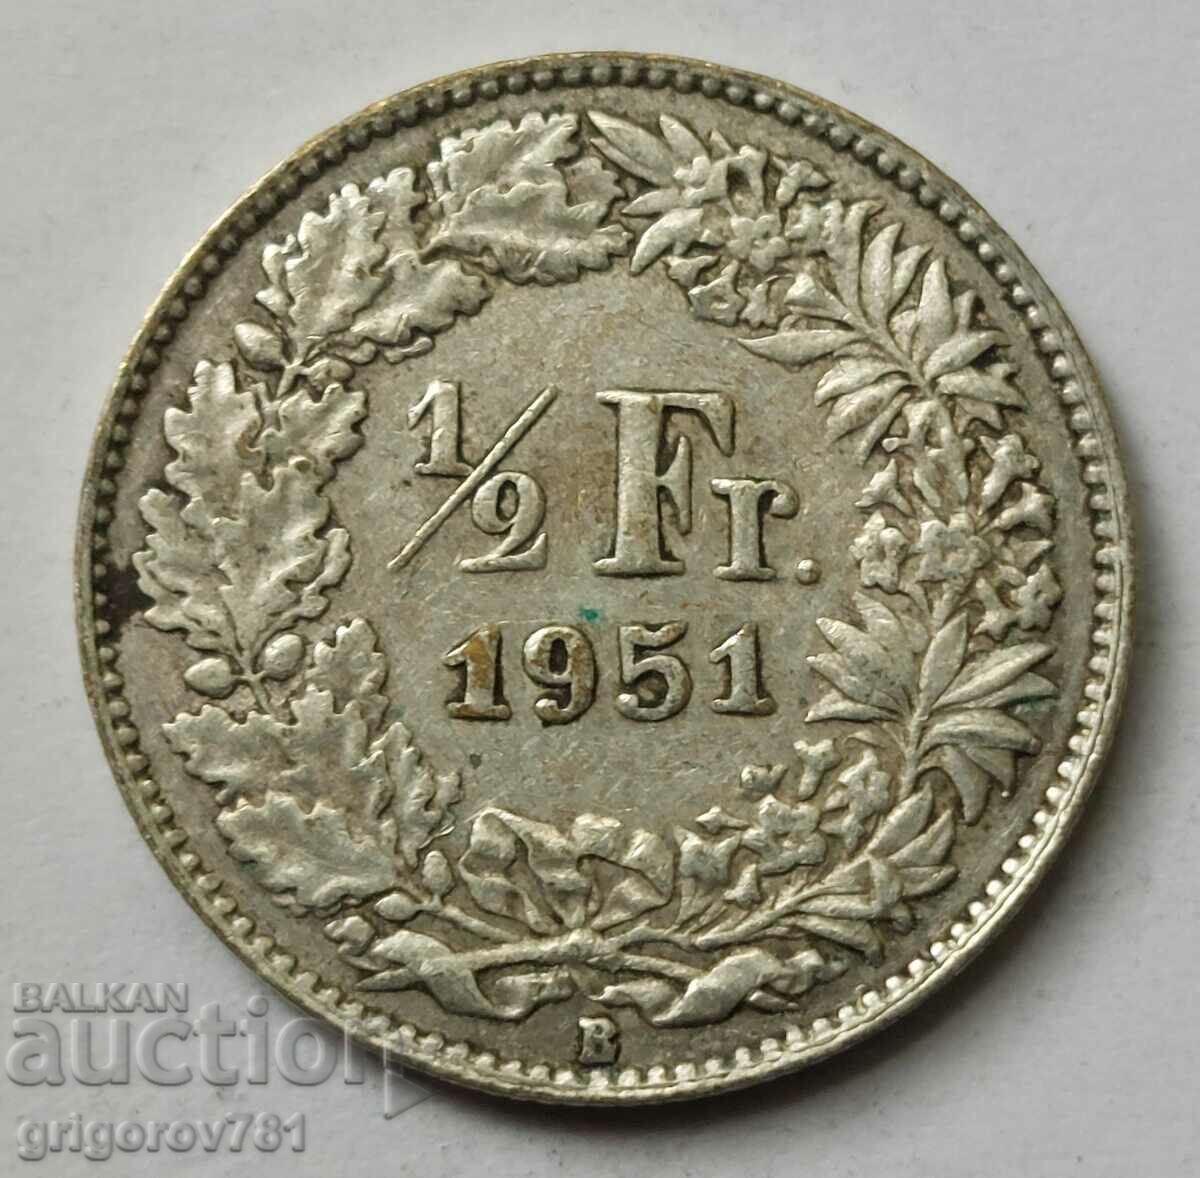 Ασημένιο φράγκο 1/2 Ελβετία 1951 B - Ασημένιο νόμισμα #67